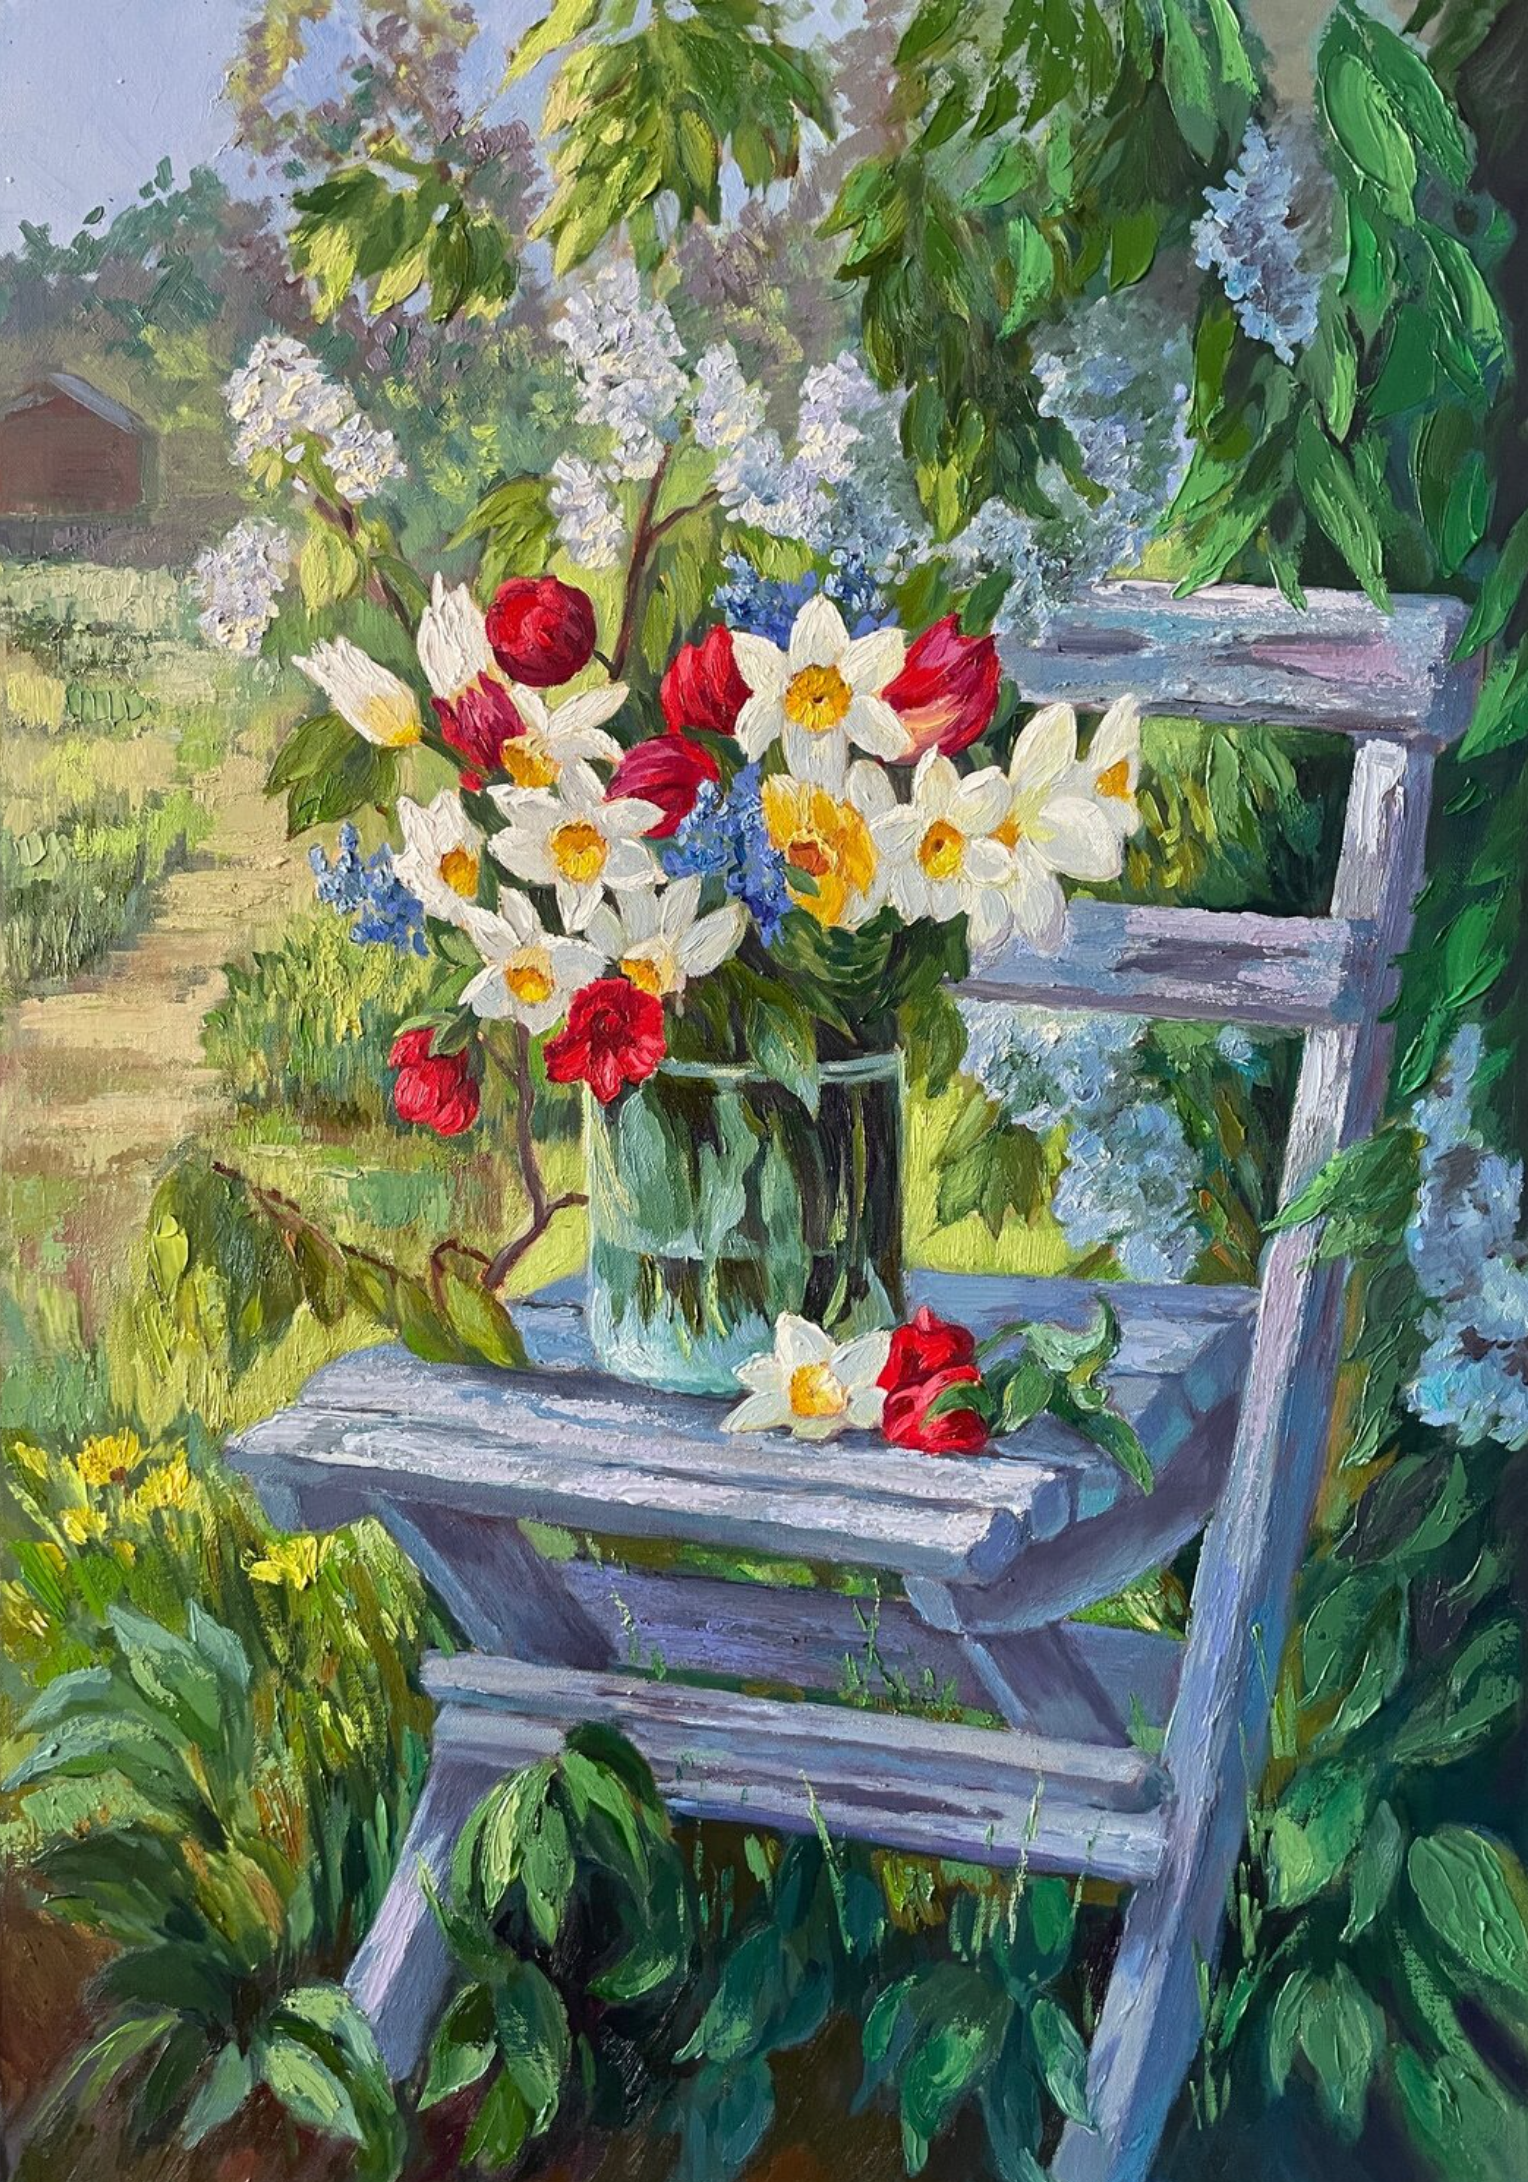 El "Ramo de primavera" de Anna Reznikova muestra, en un cuadro lleno de color, un magnífico jardín.  Una composición floral, con coloridas flores de verano.